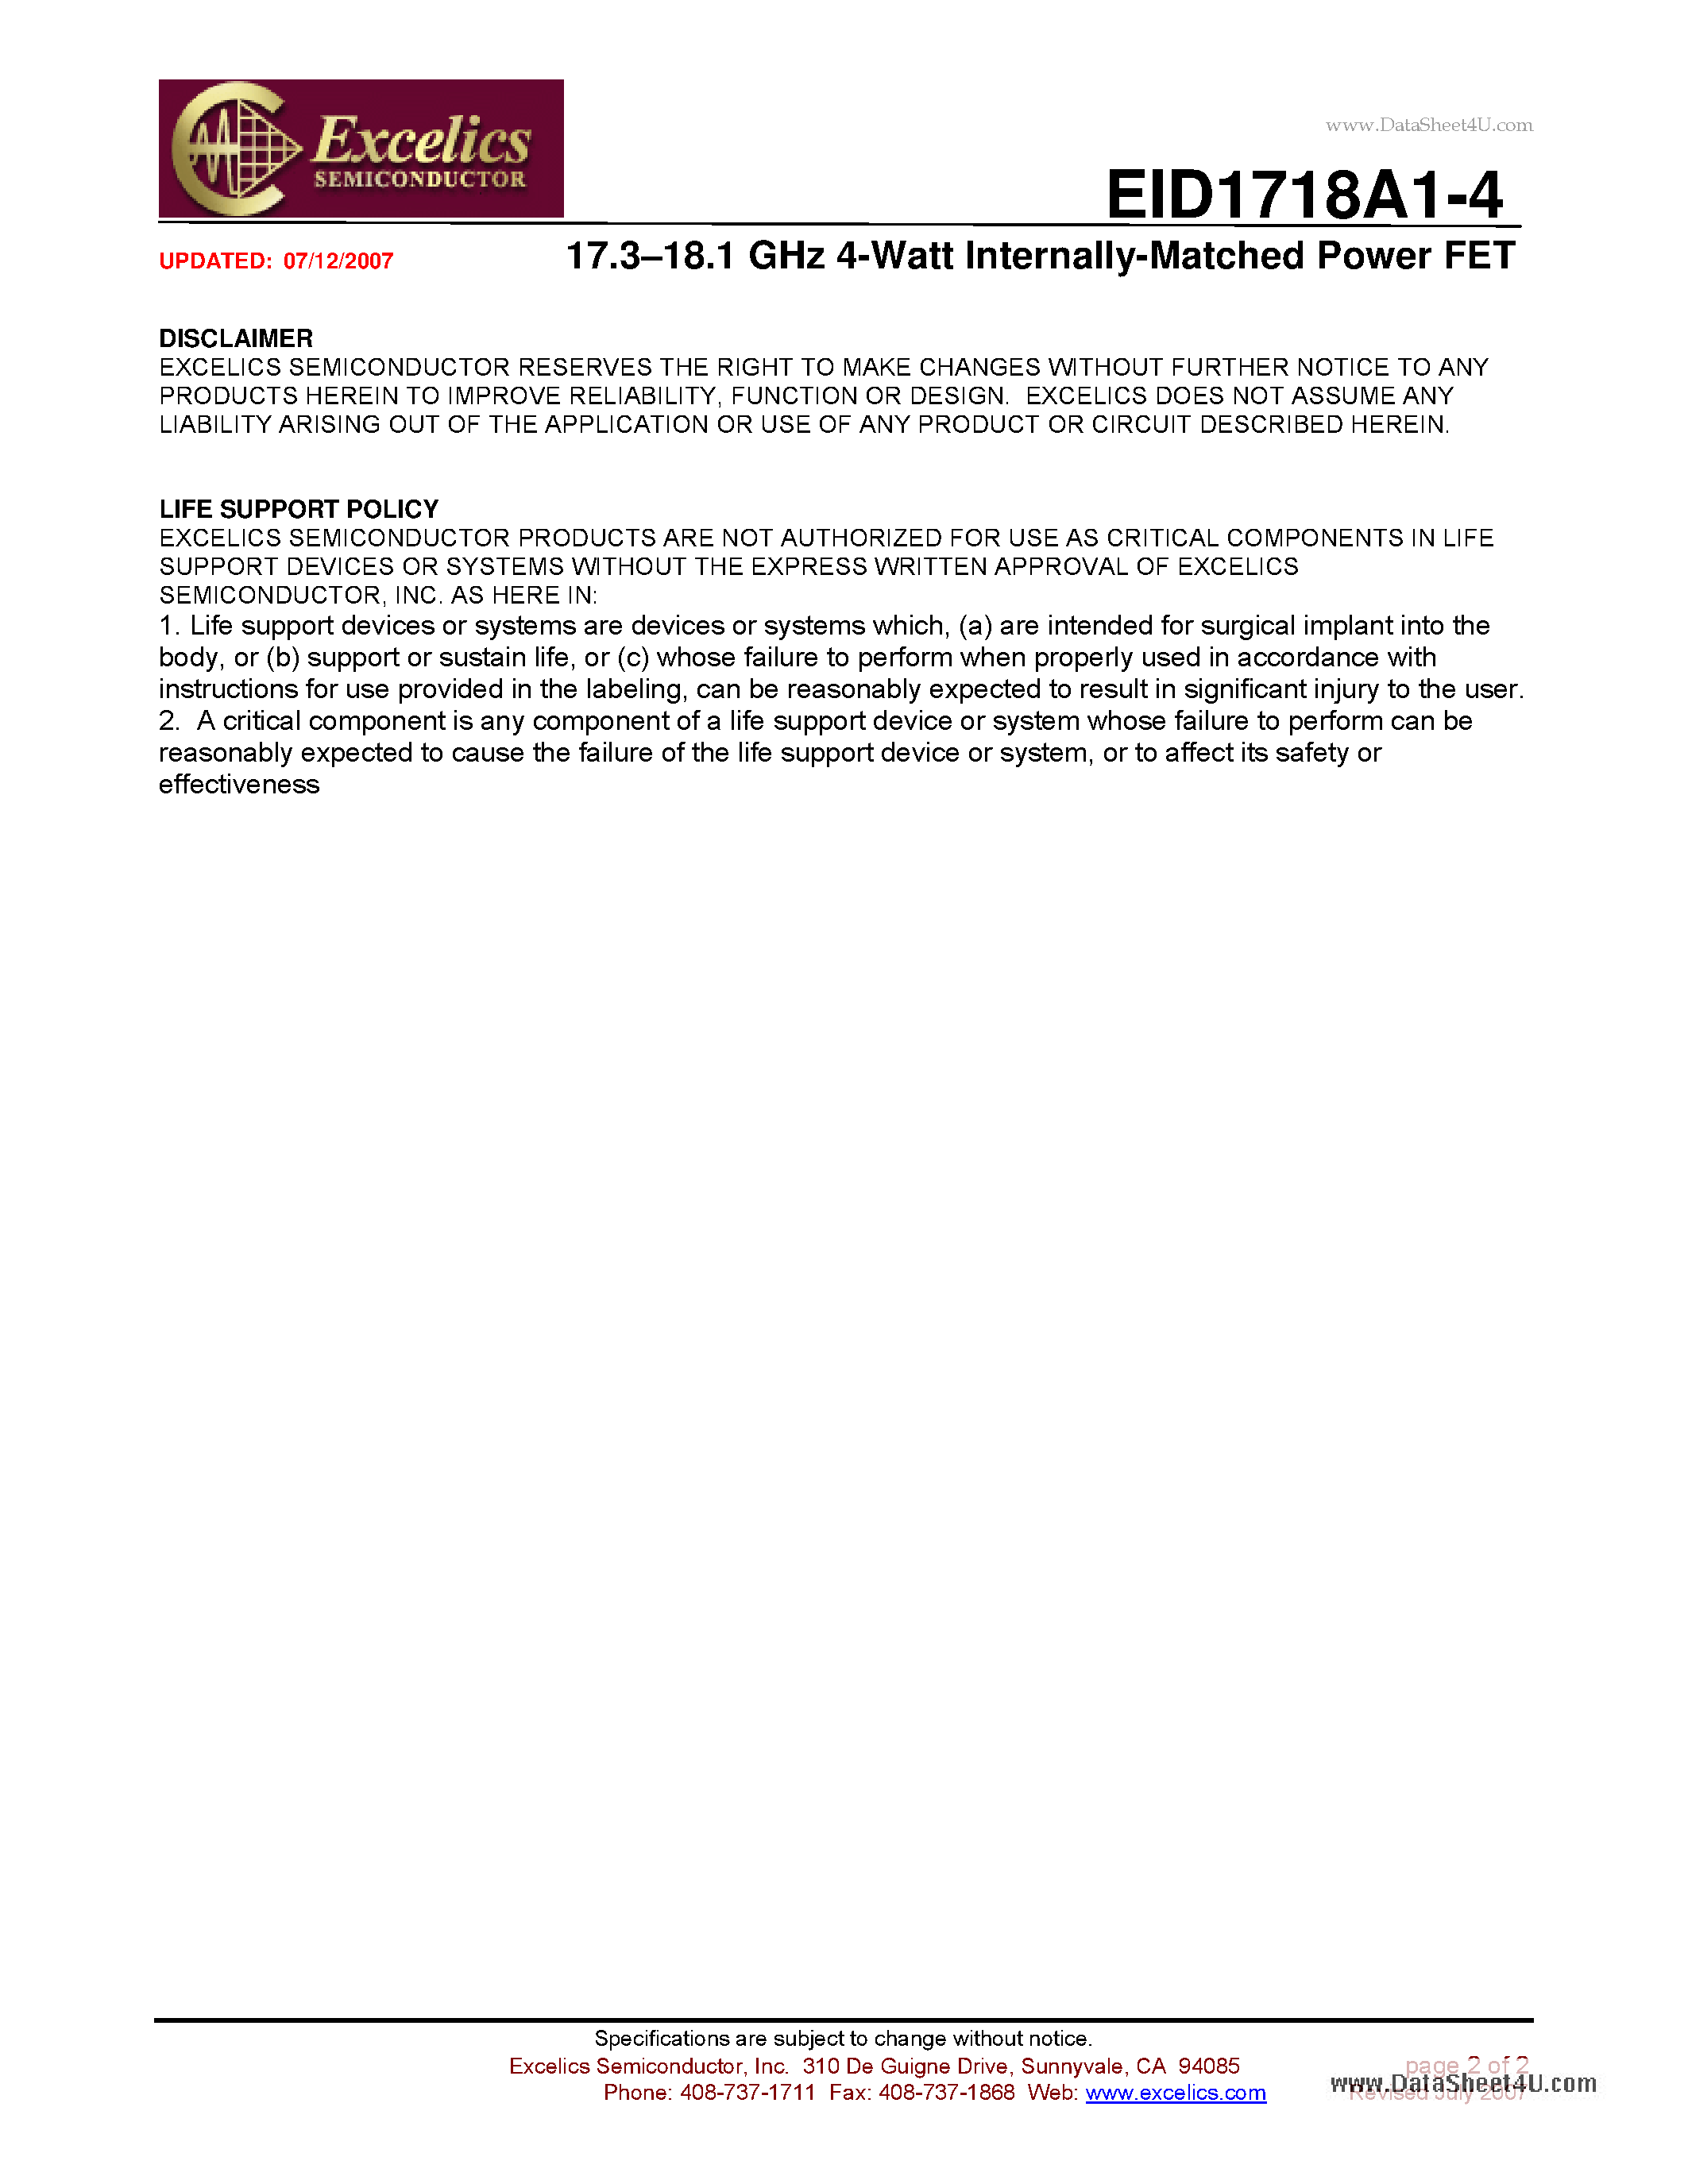 Даташит EID1718A1-4 - 17.3-18.1 GHz 4-Watt Internally-Matched Power FET страница 2